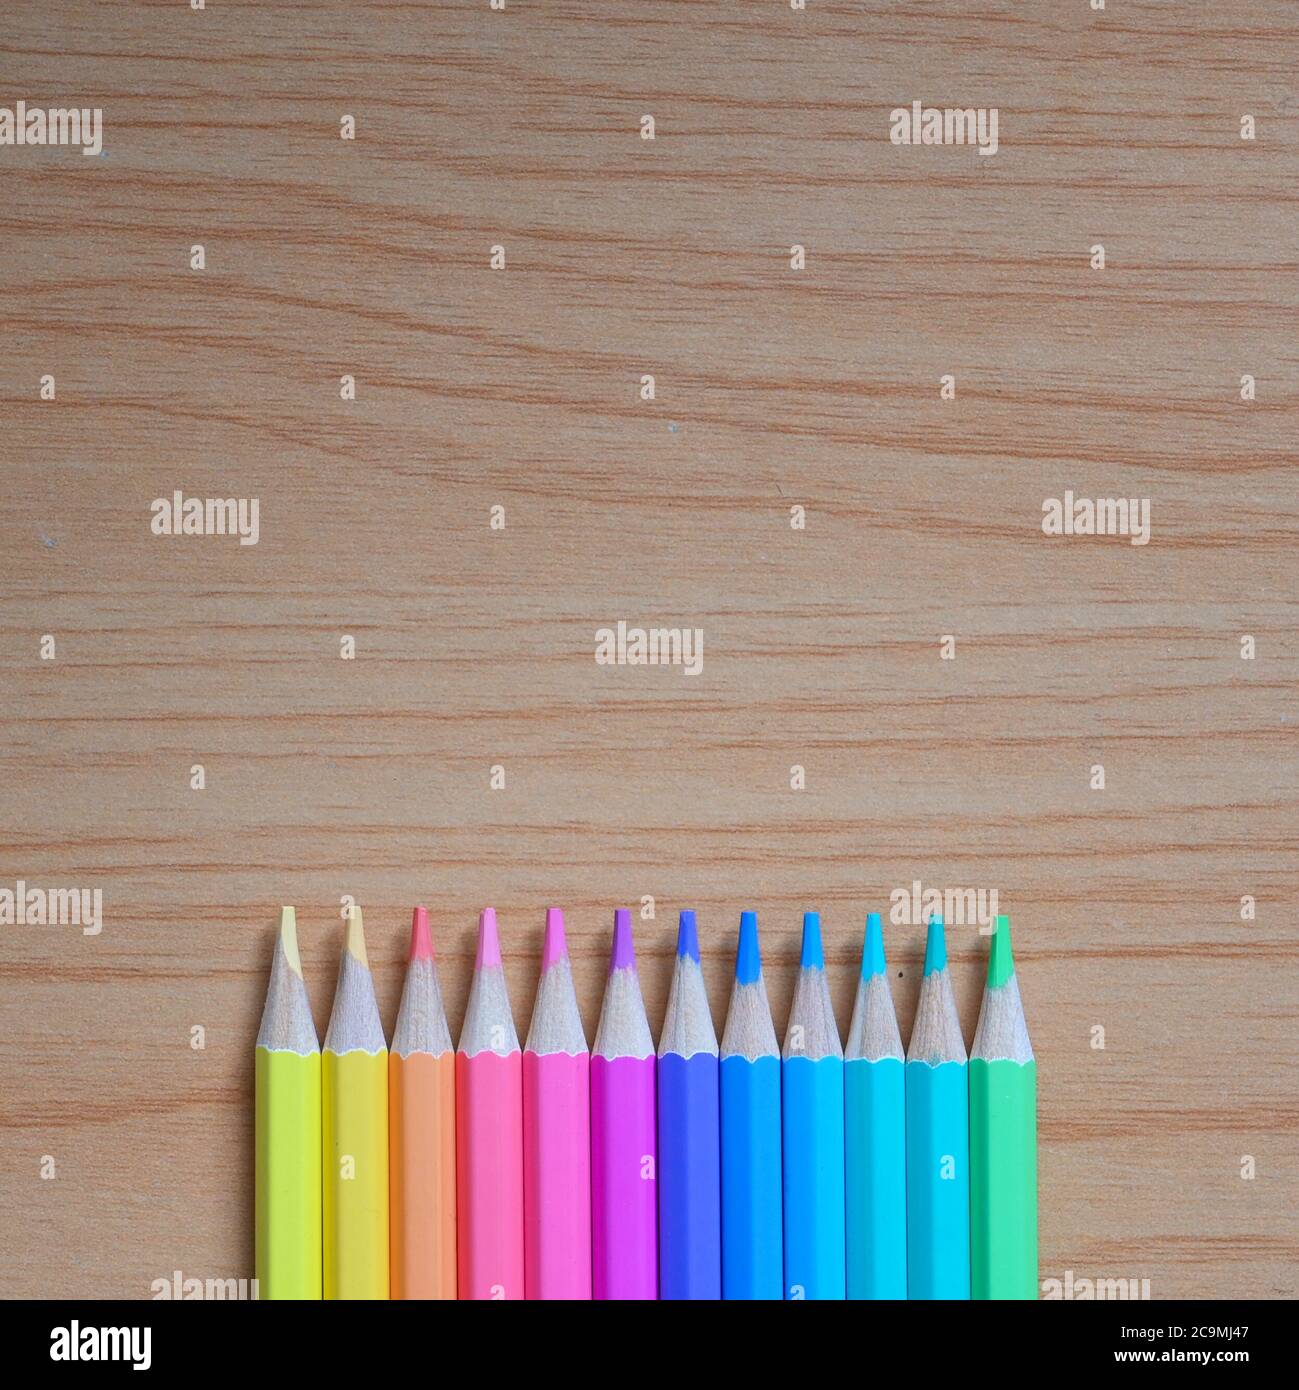 Vue de dessus l'image de crayons multicolores aiguisés est mise sur une table en bois. Banque D'Images